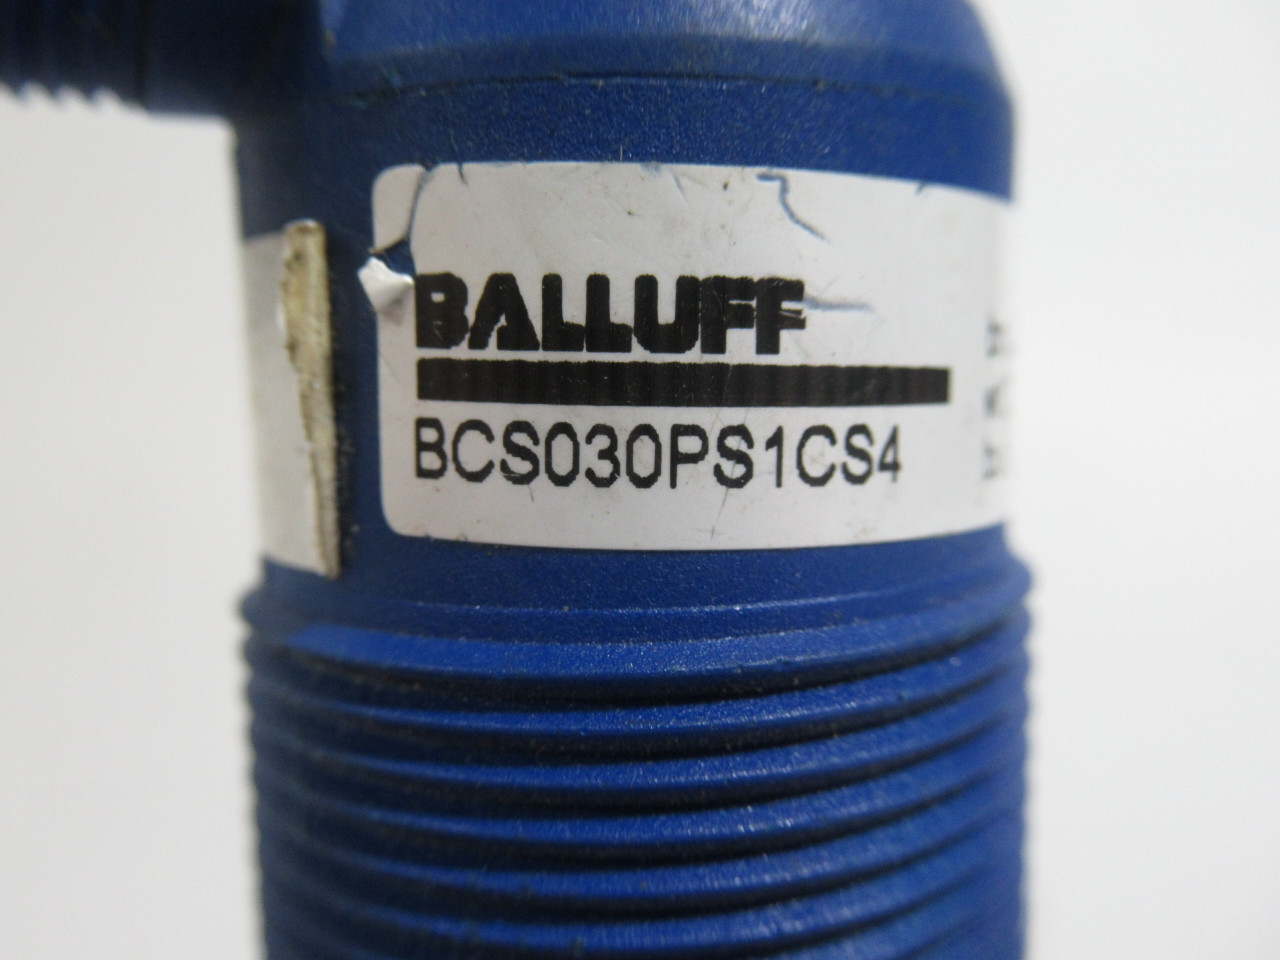 Balluff BCS030PS1CS4 Capacitive Proximity Sensor 10-30VDC 250mA 20mm USED